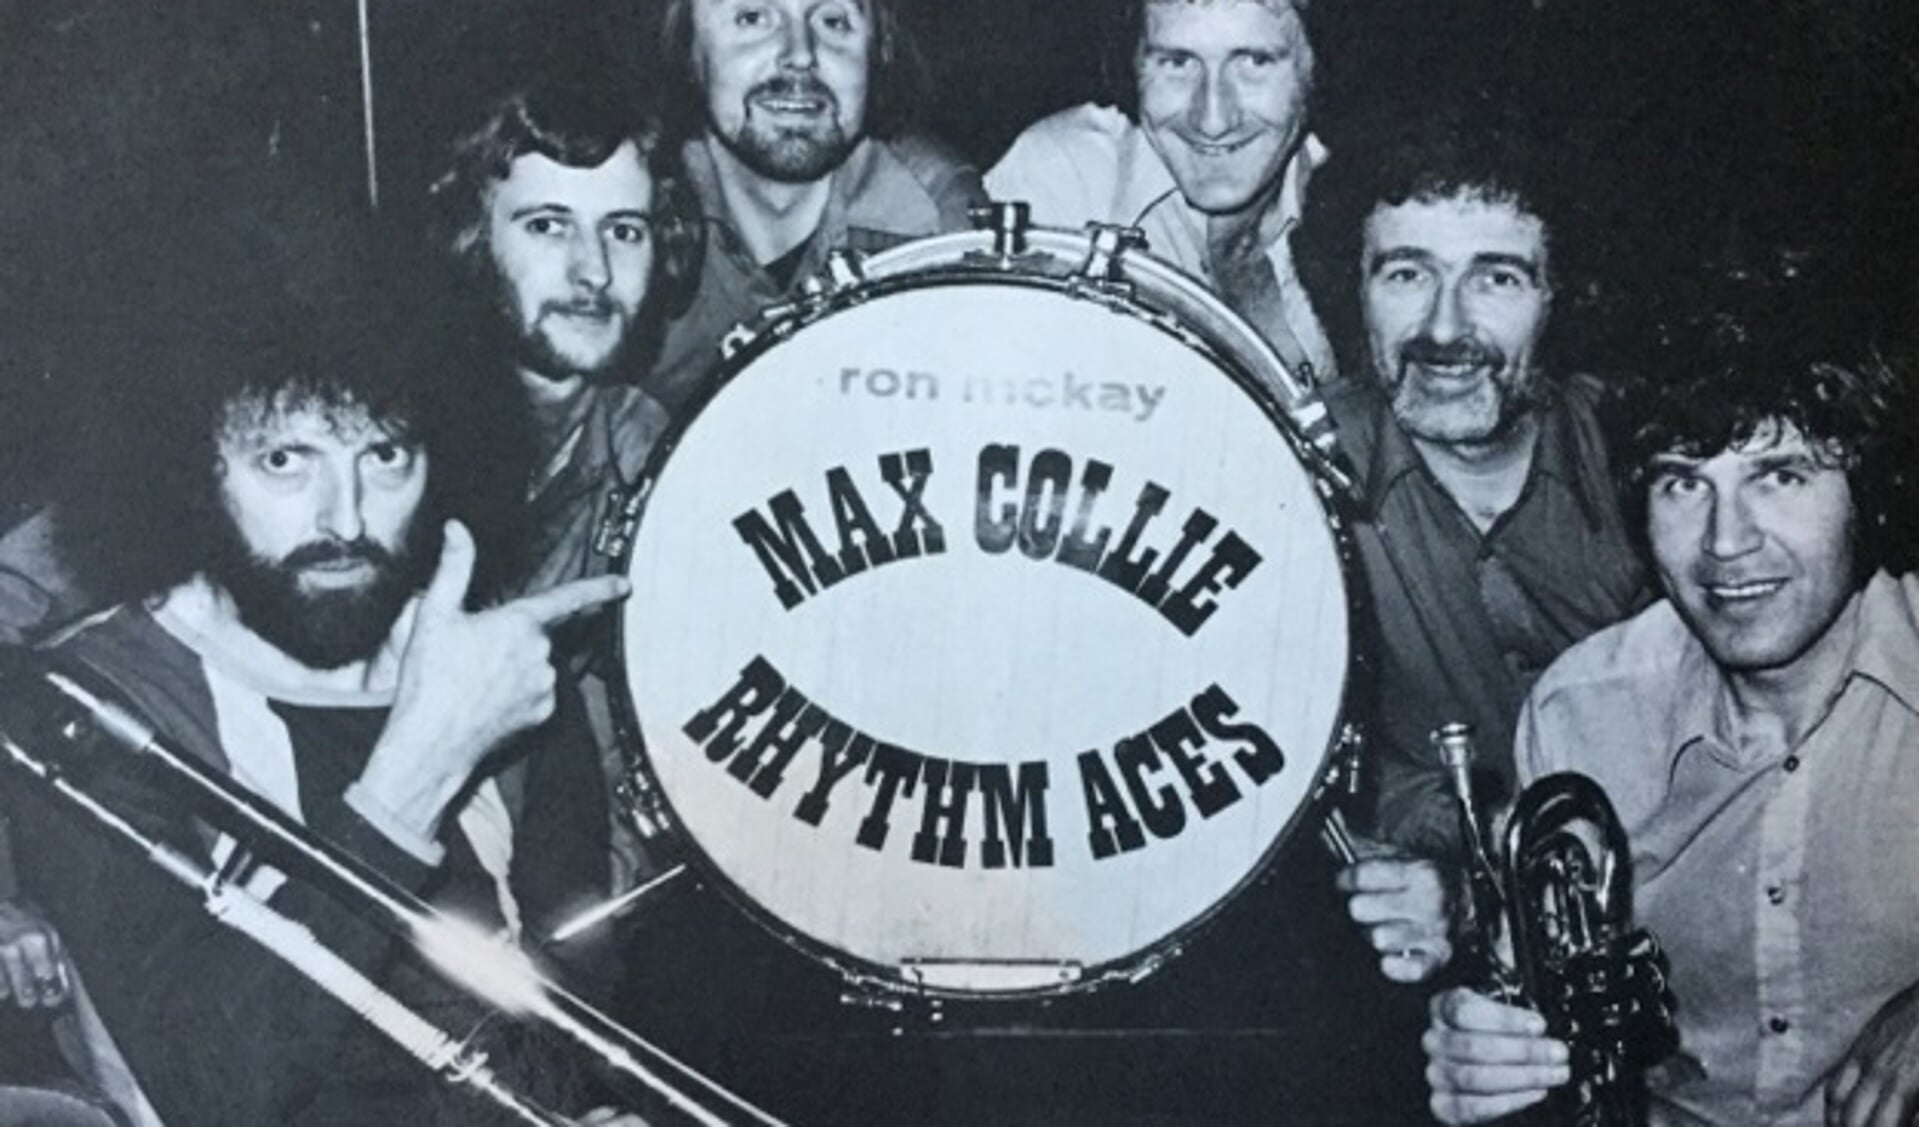 De Sgt. Peppers Jazzclub brengt 20 januari een muzikaal eerbetoon aan de band van de overleden Max Collie: Max Collie Rhythm Aces. (Foto: aangeleverd)